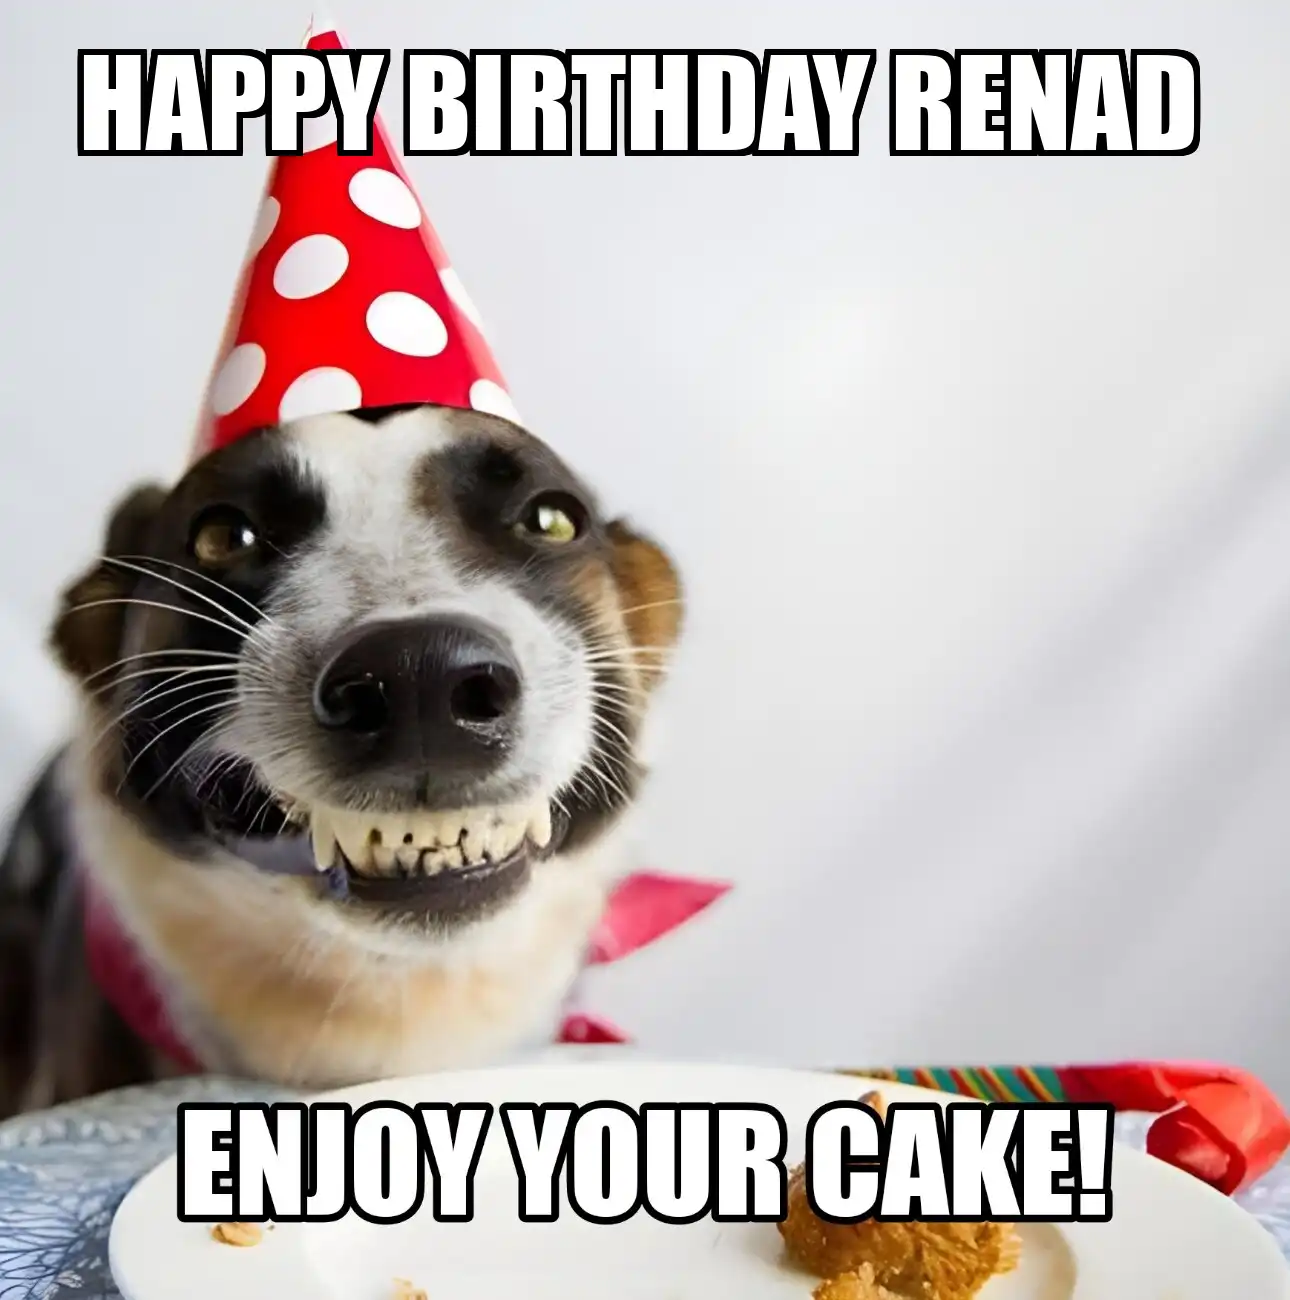 Happy Birthday Renad Enjoy Your Cake Dog Meme